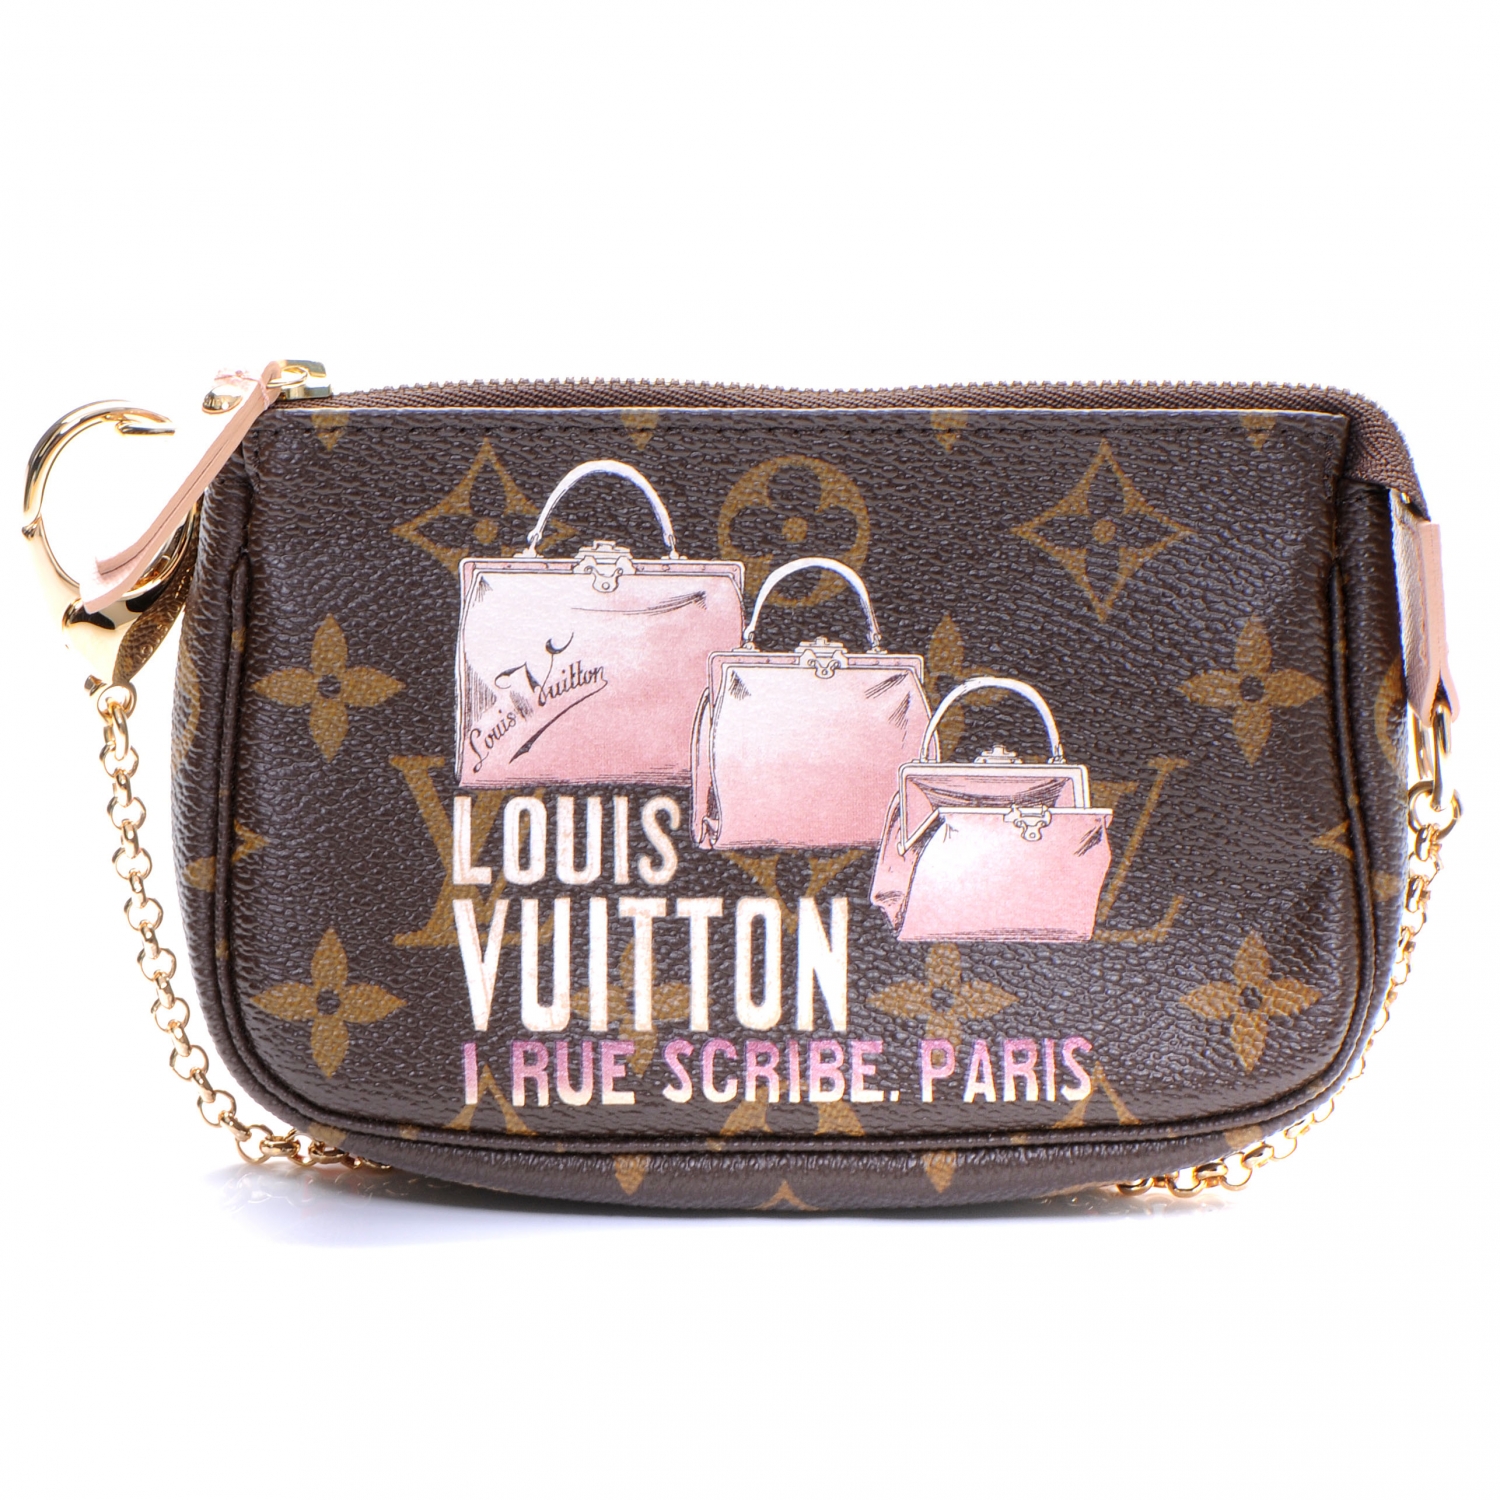 Louis Vuitton mini pochette, Limited edition unboxing